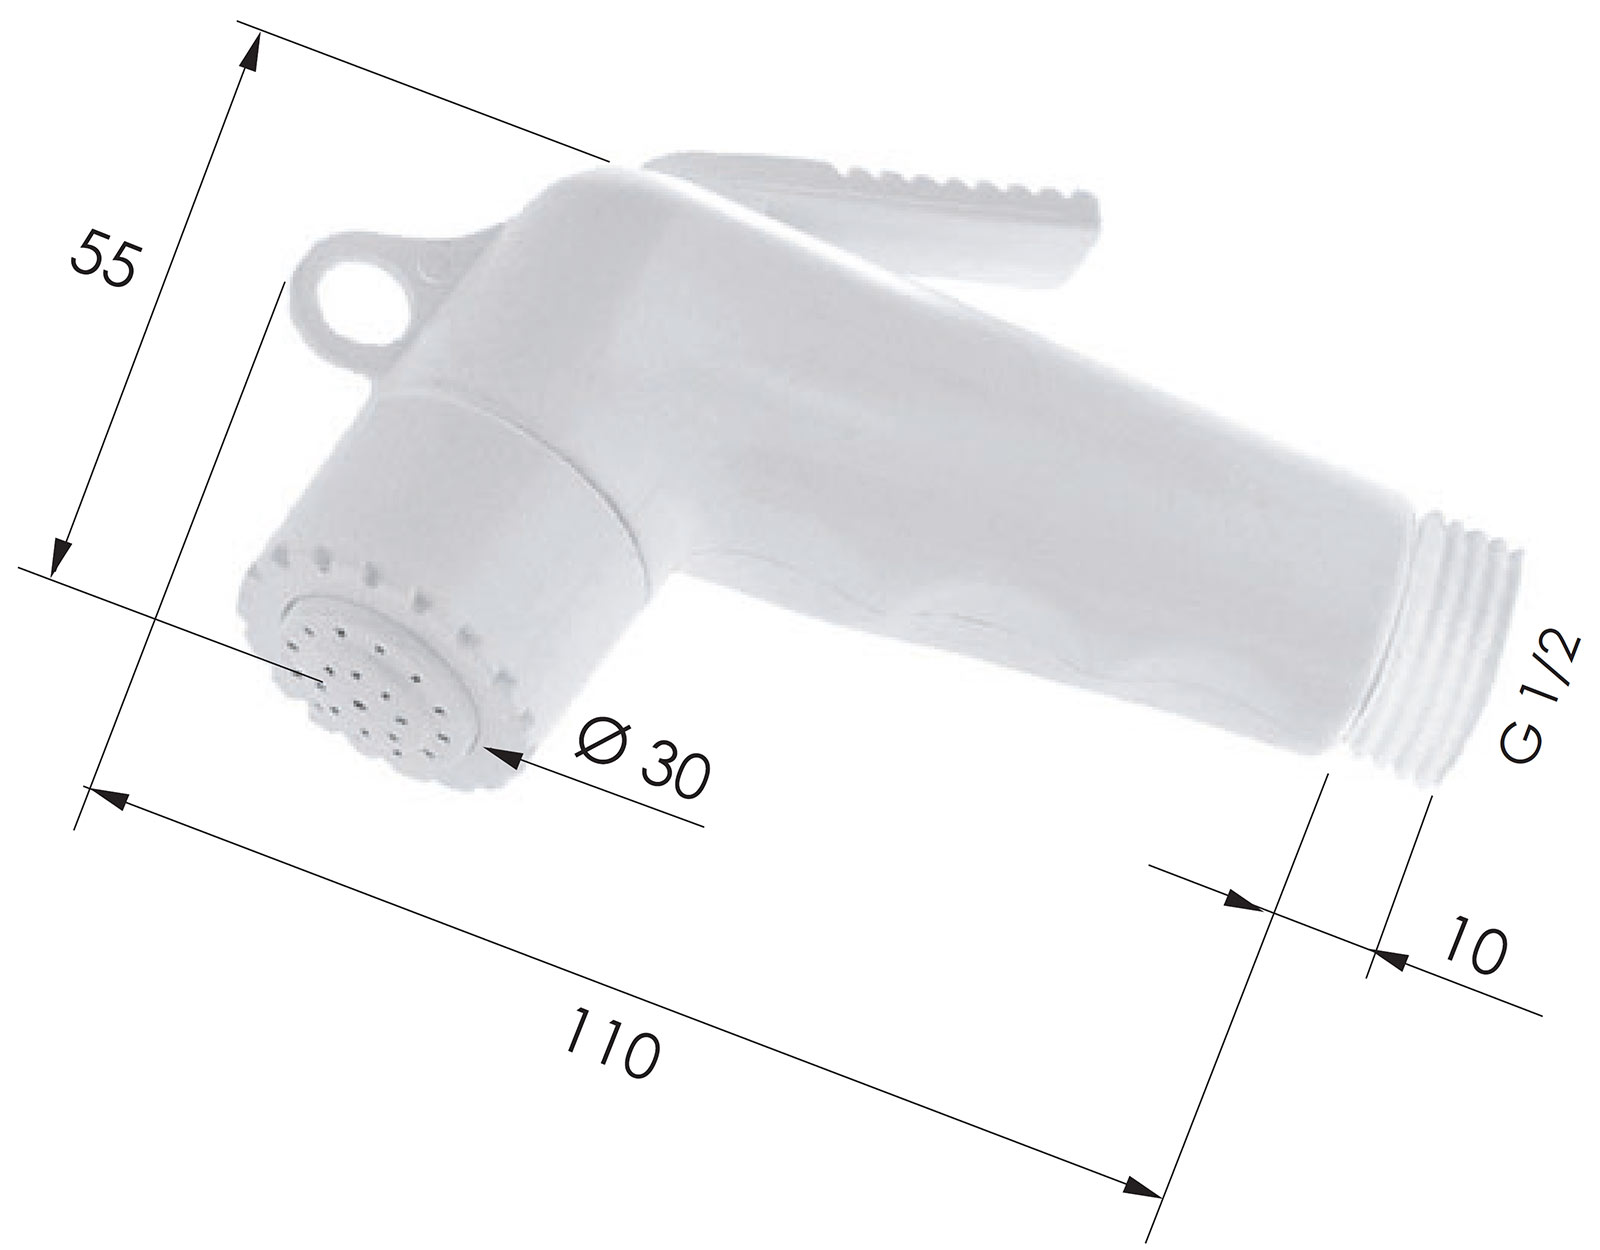 Remer 332DPBN Гигиенический душ пластиковый (белый)